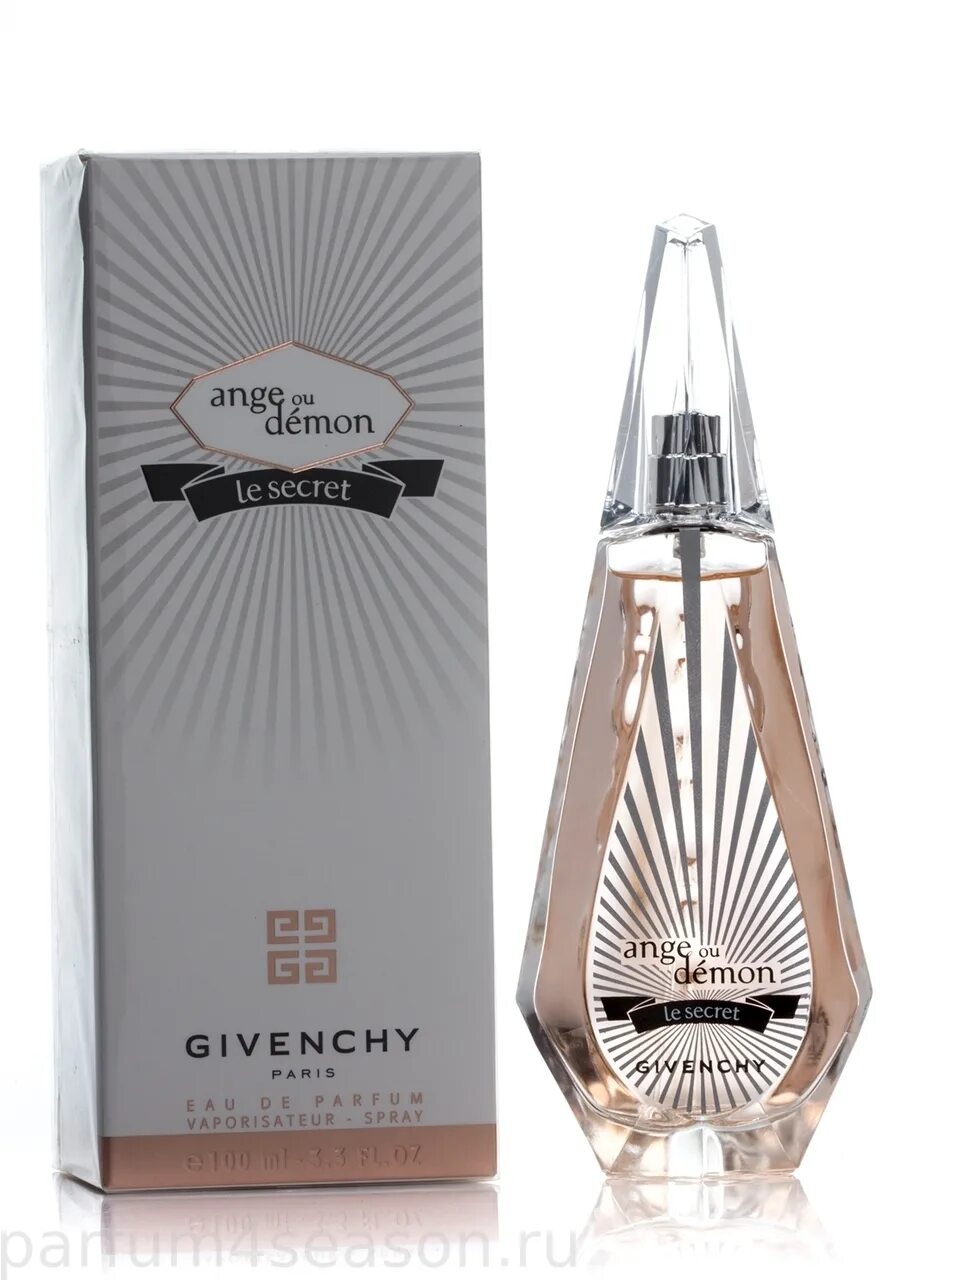 Givenchy ange ou Demon le Secret 100 ml. Ange ou Demon le Secret Givenchy 100мл. Ange ou Demon le Secret (2014) Givenchy. Givenchy ange ou Demon 100 мл.